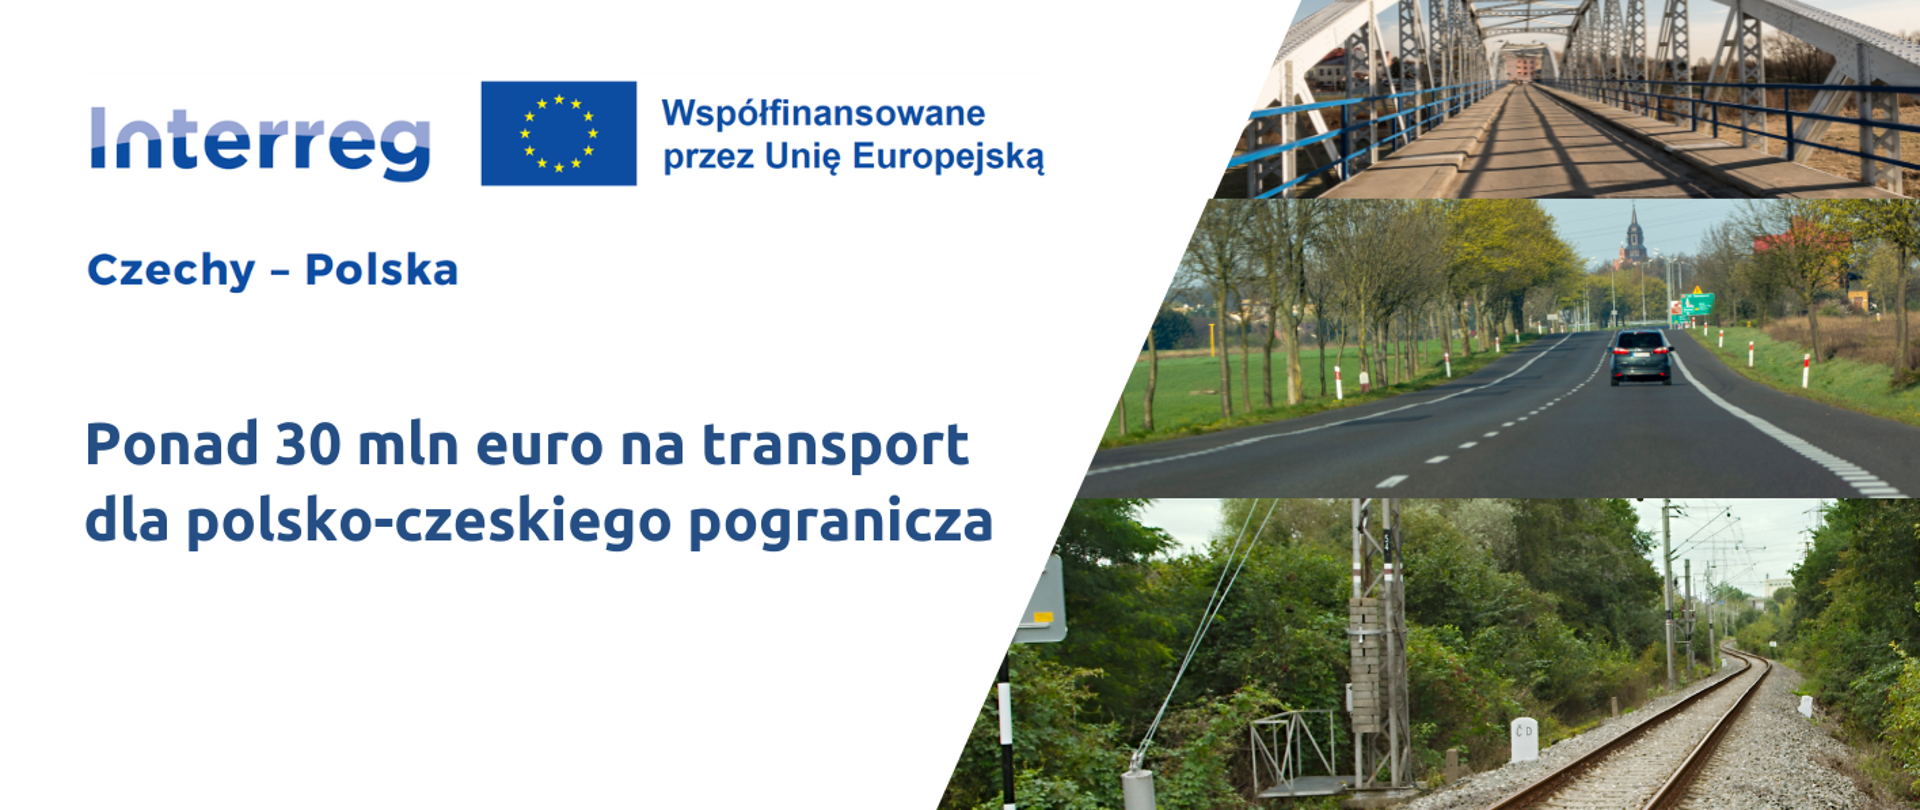 Ponad 30 mln euro na transport dla polsko-czeskiego pogranicza